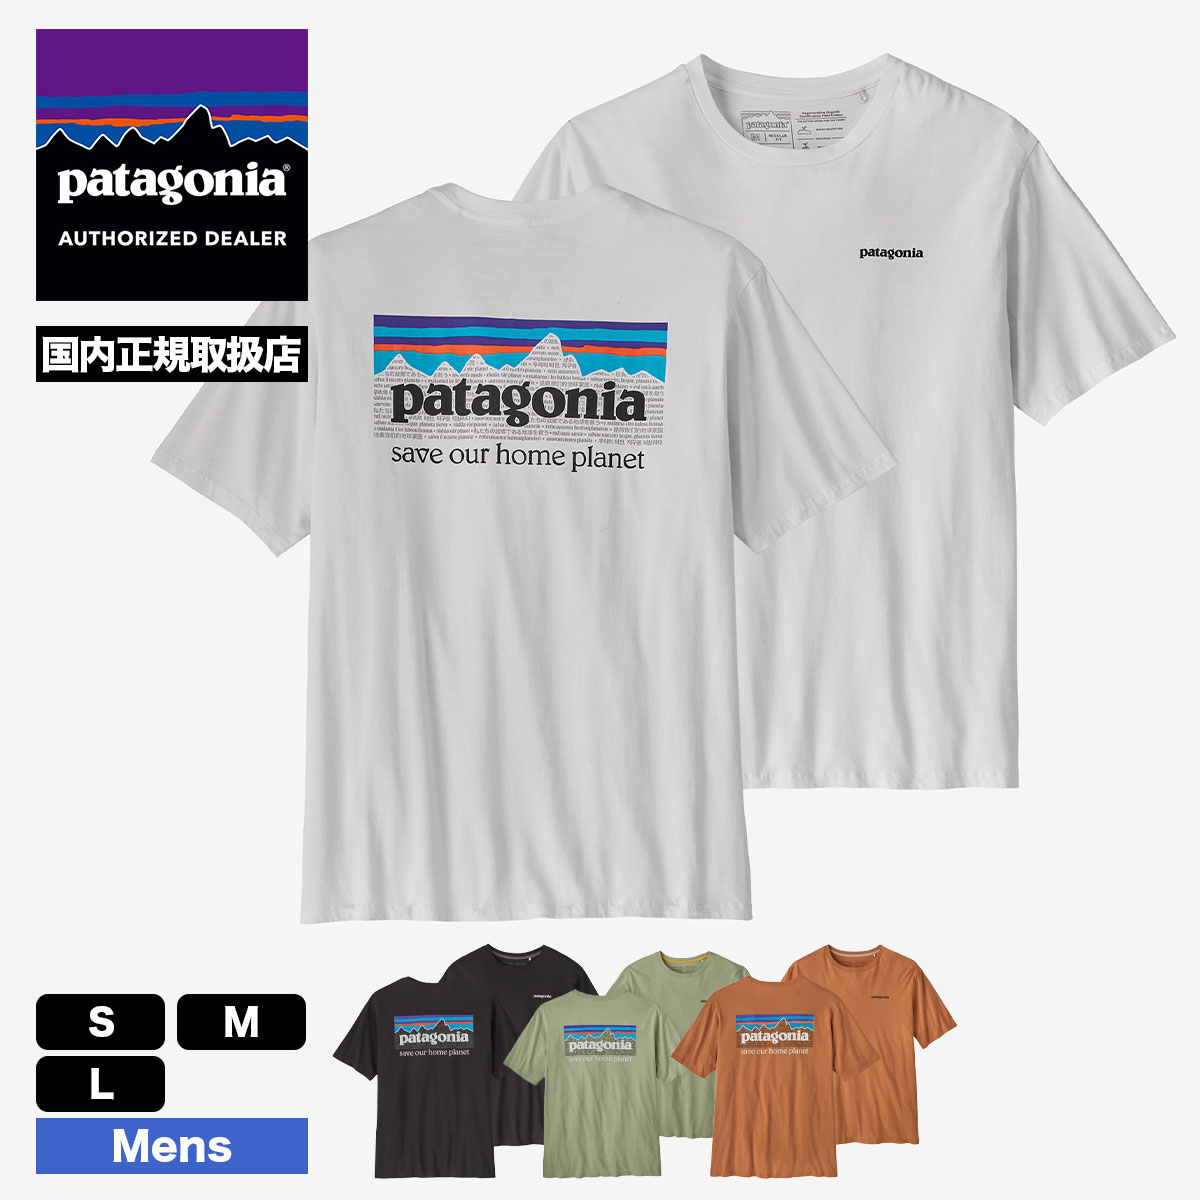 【30%OFF】Patagonia パタゴニア Tシャツ 半袖 メンズ・P-6 ミッション・オーガニック・Tシャツ 定番 ロゴ バックプリント  シンプル ホワイト 白 普段着 おしゃれ 人気 ブランド 通販【37529】 -ジャックオーシャンスポーツ